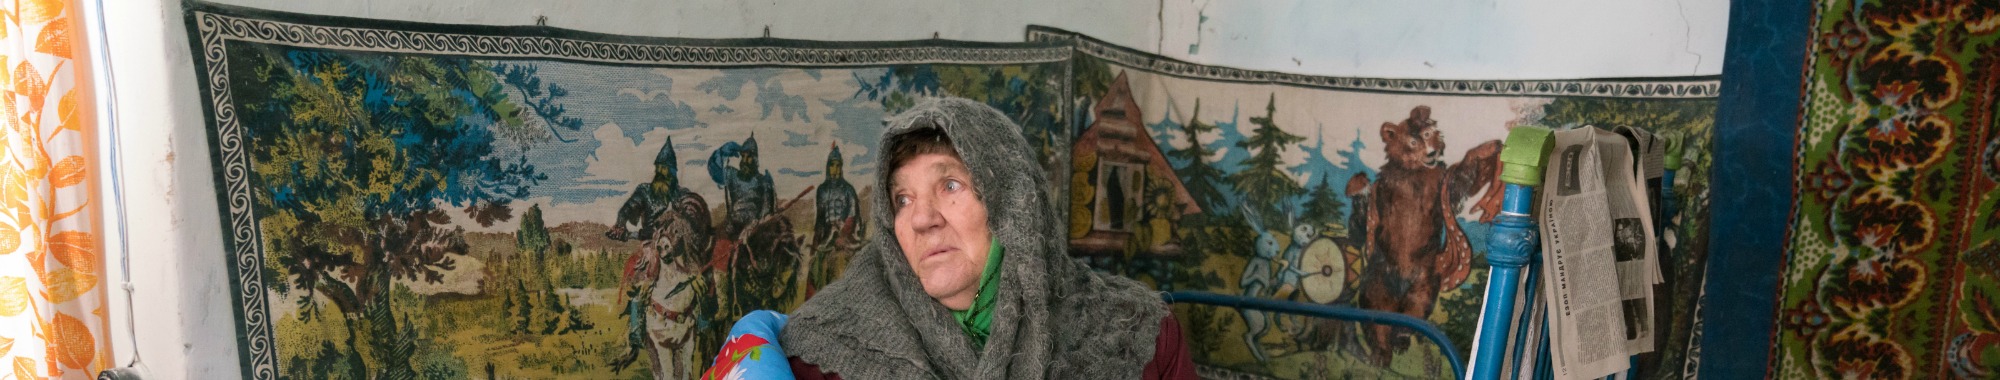 Provide winter survival packs for elderly Jews in Ukraine